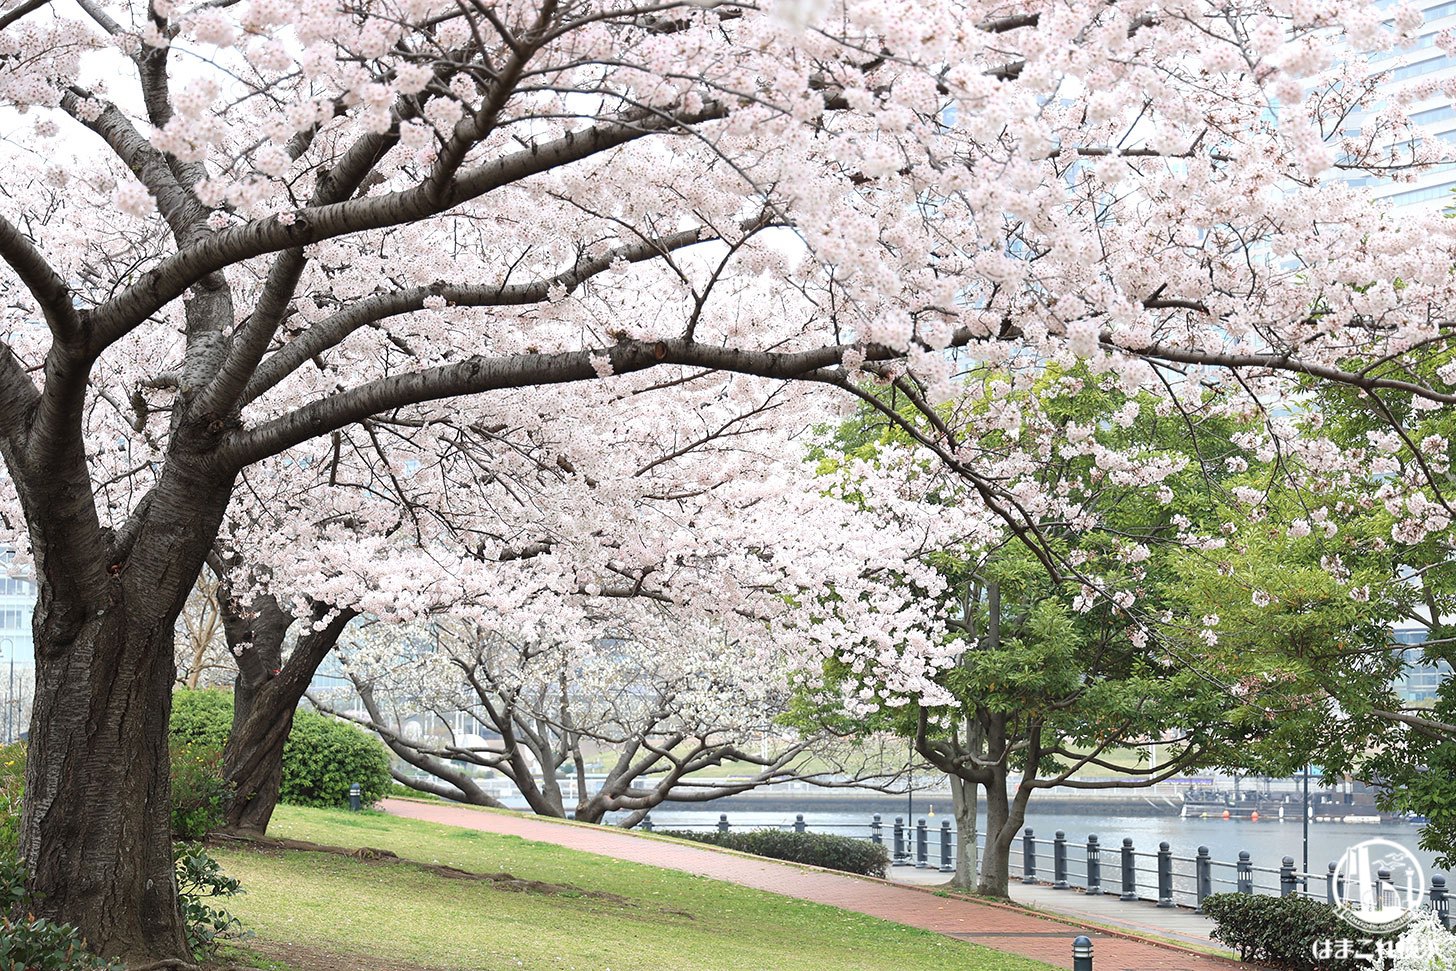 横浜みなとみらいの桜2022年も満開！満開桜撮って満喫したお花見コース1時間